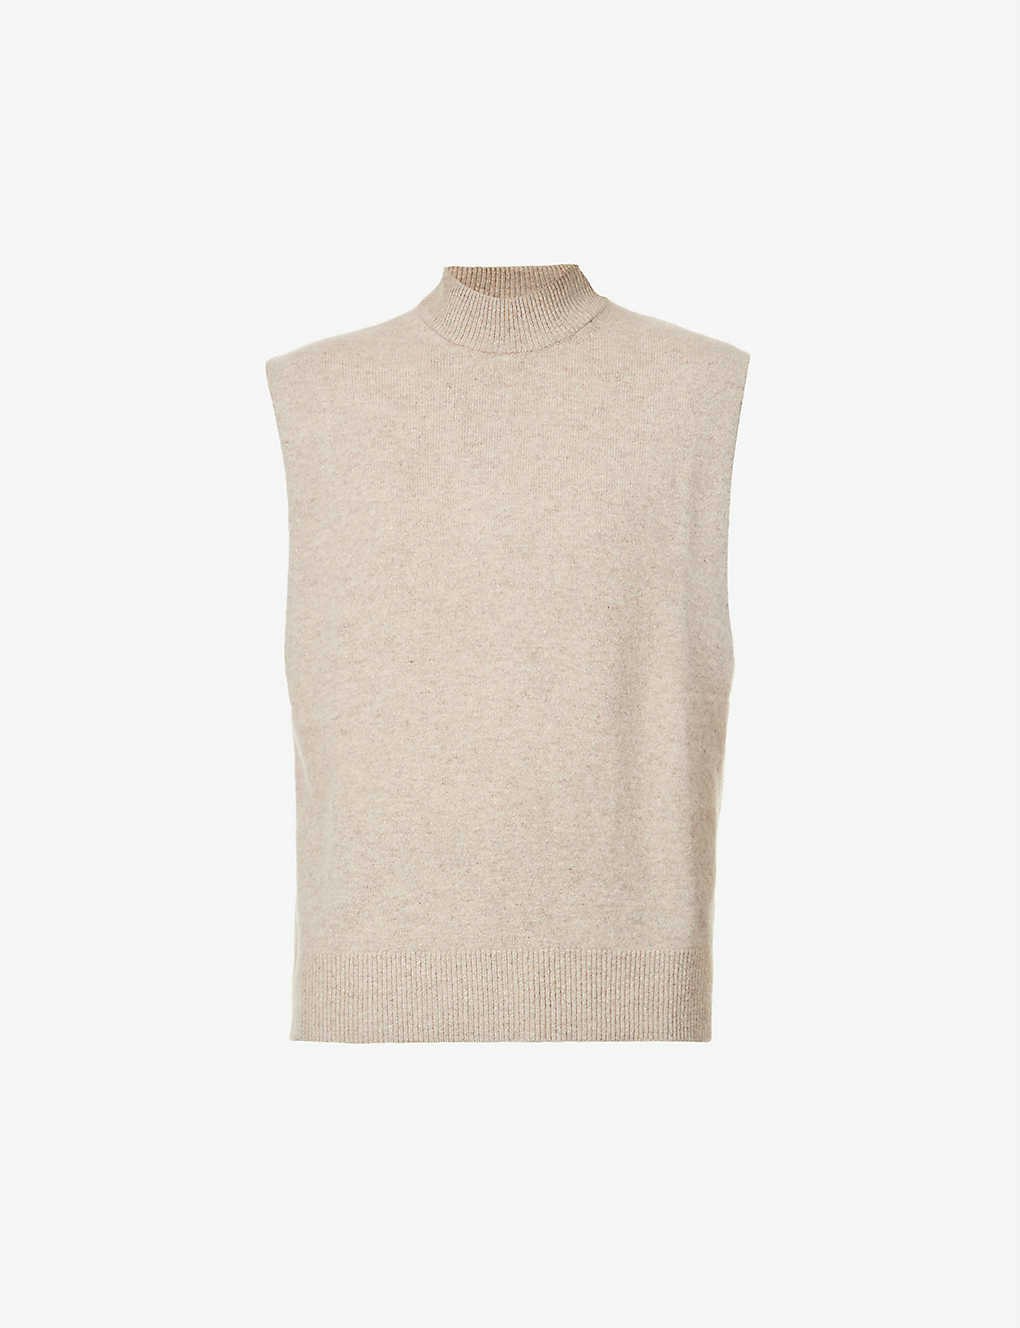 9 best knit vests for winter 2020